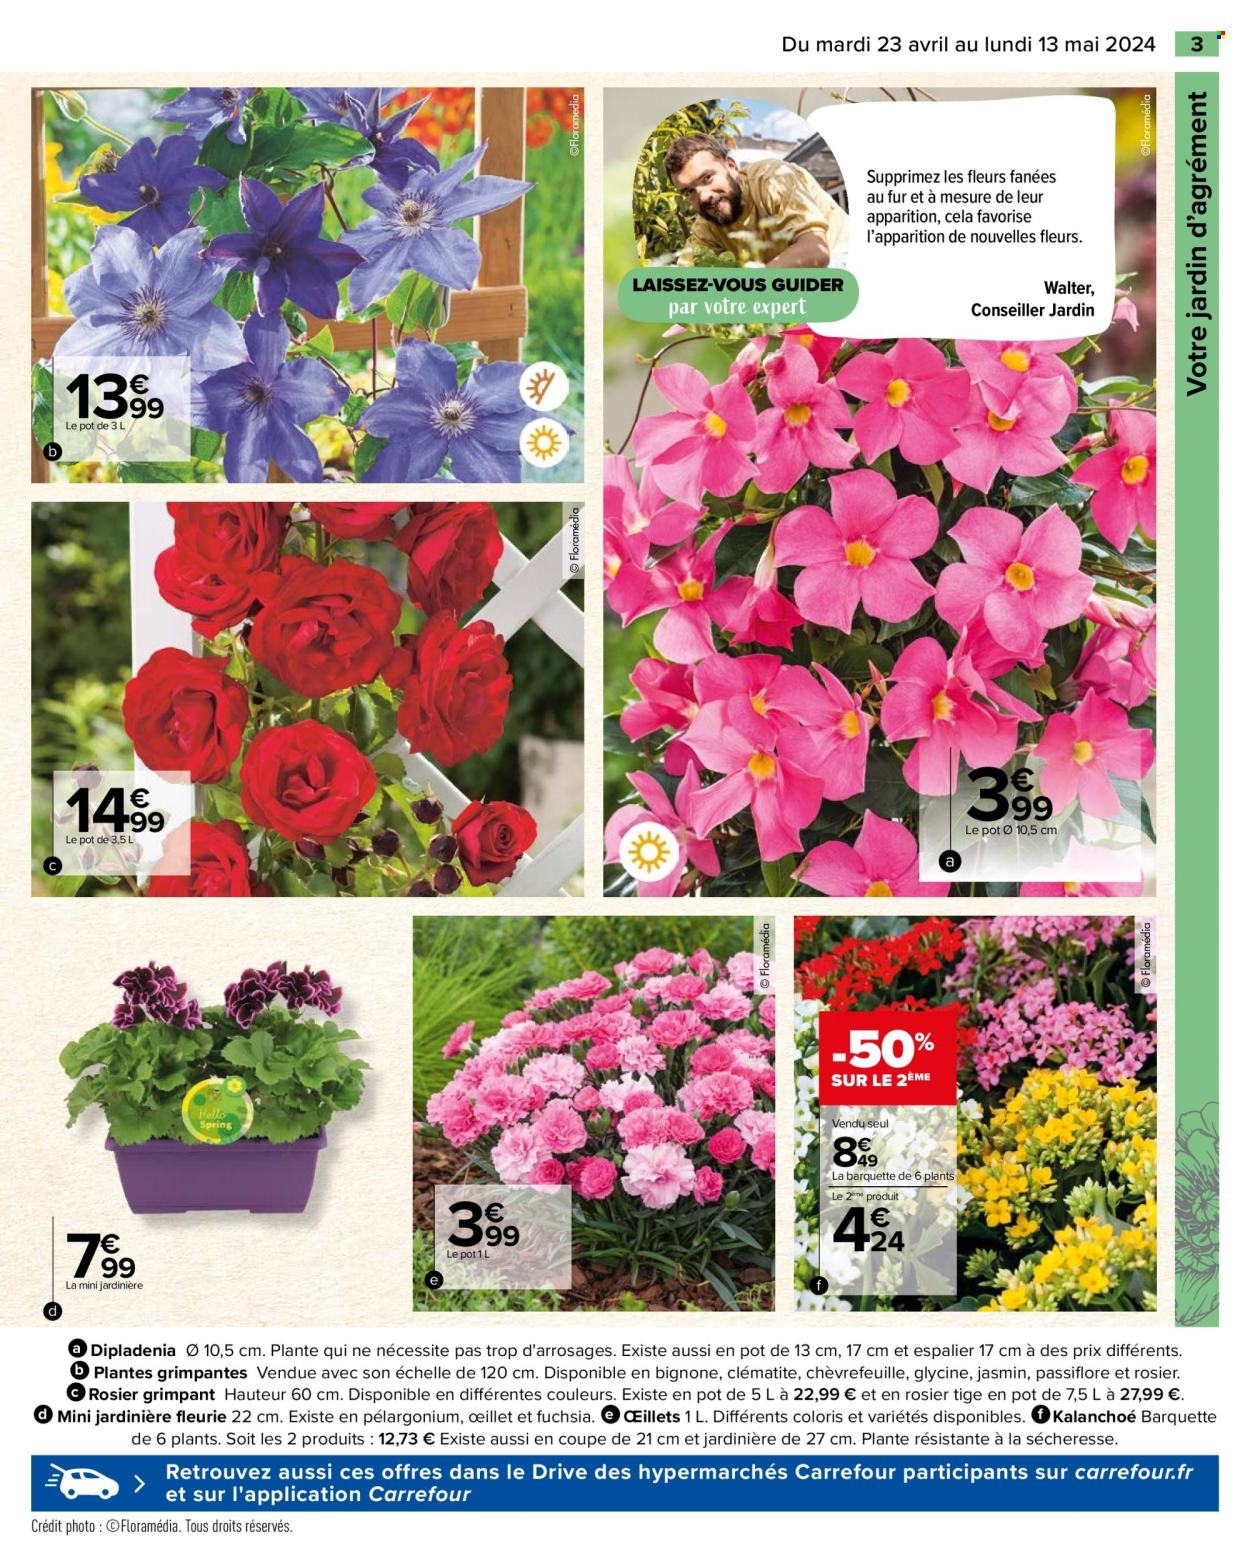 thumbnail - Catalogue Carrefour Hypermarchés - 23/04/2024 - 13/05/2024 - Produits soldés - fleur, dipladenia, rosier, kalanchoé, jardinière. Page 5.